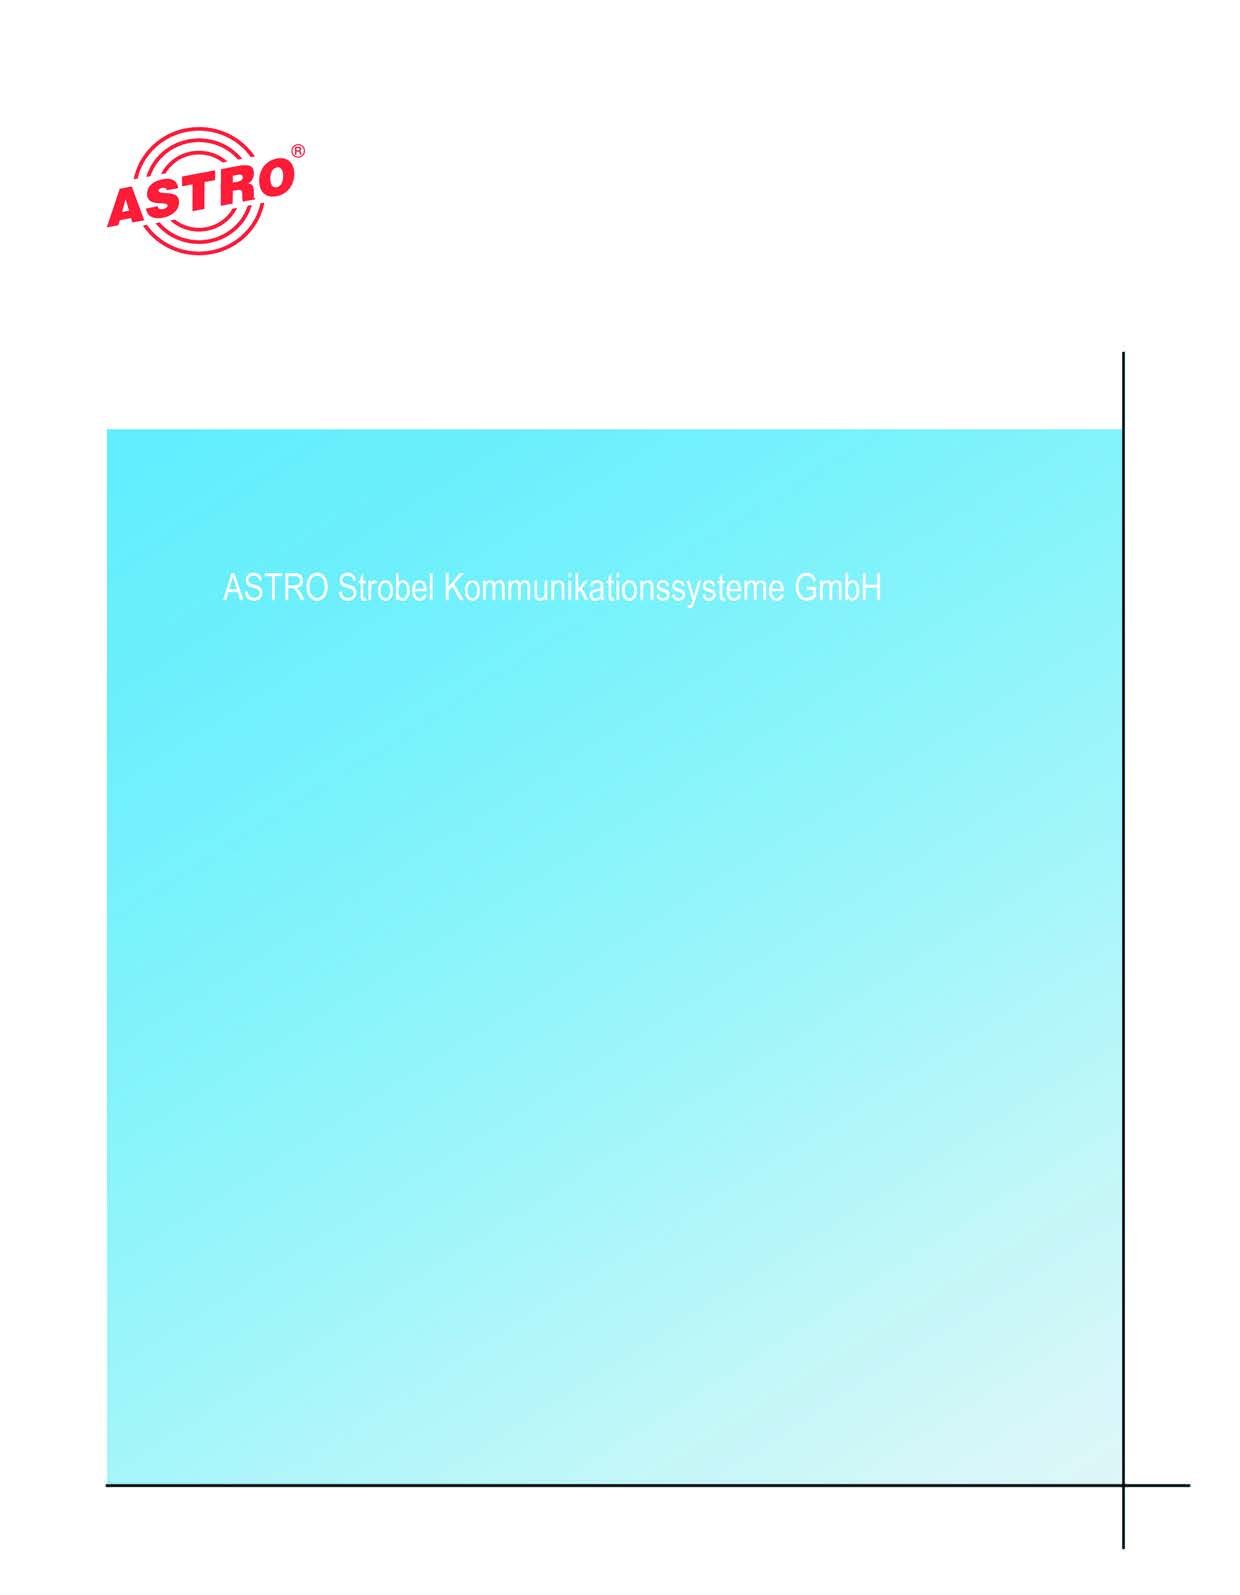 2013 ASTRO Inhaltliche Änderungen vorbehalten. Änderungsdienst und Copyright: Diese Dokumentation enthält urheberrechtlich geschützte Informationen.